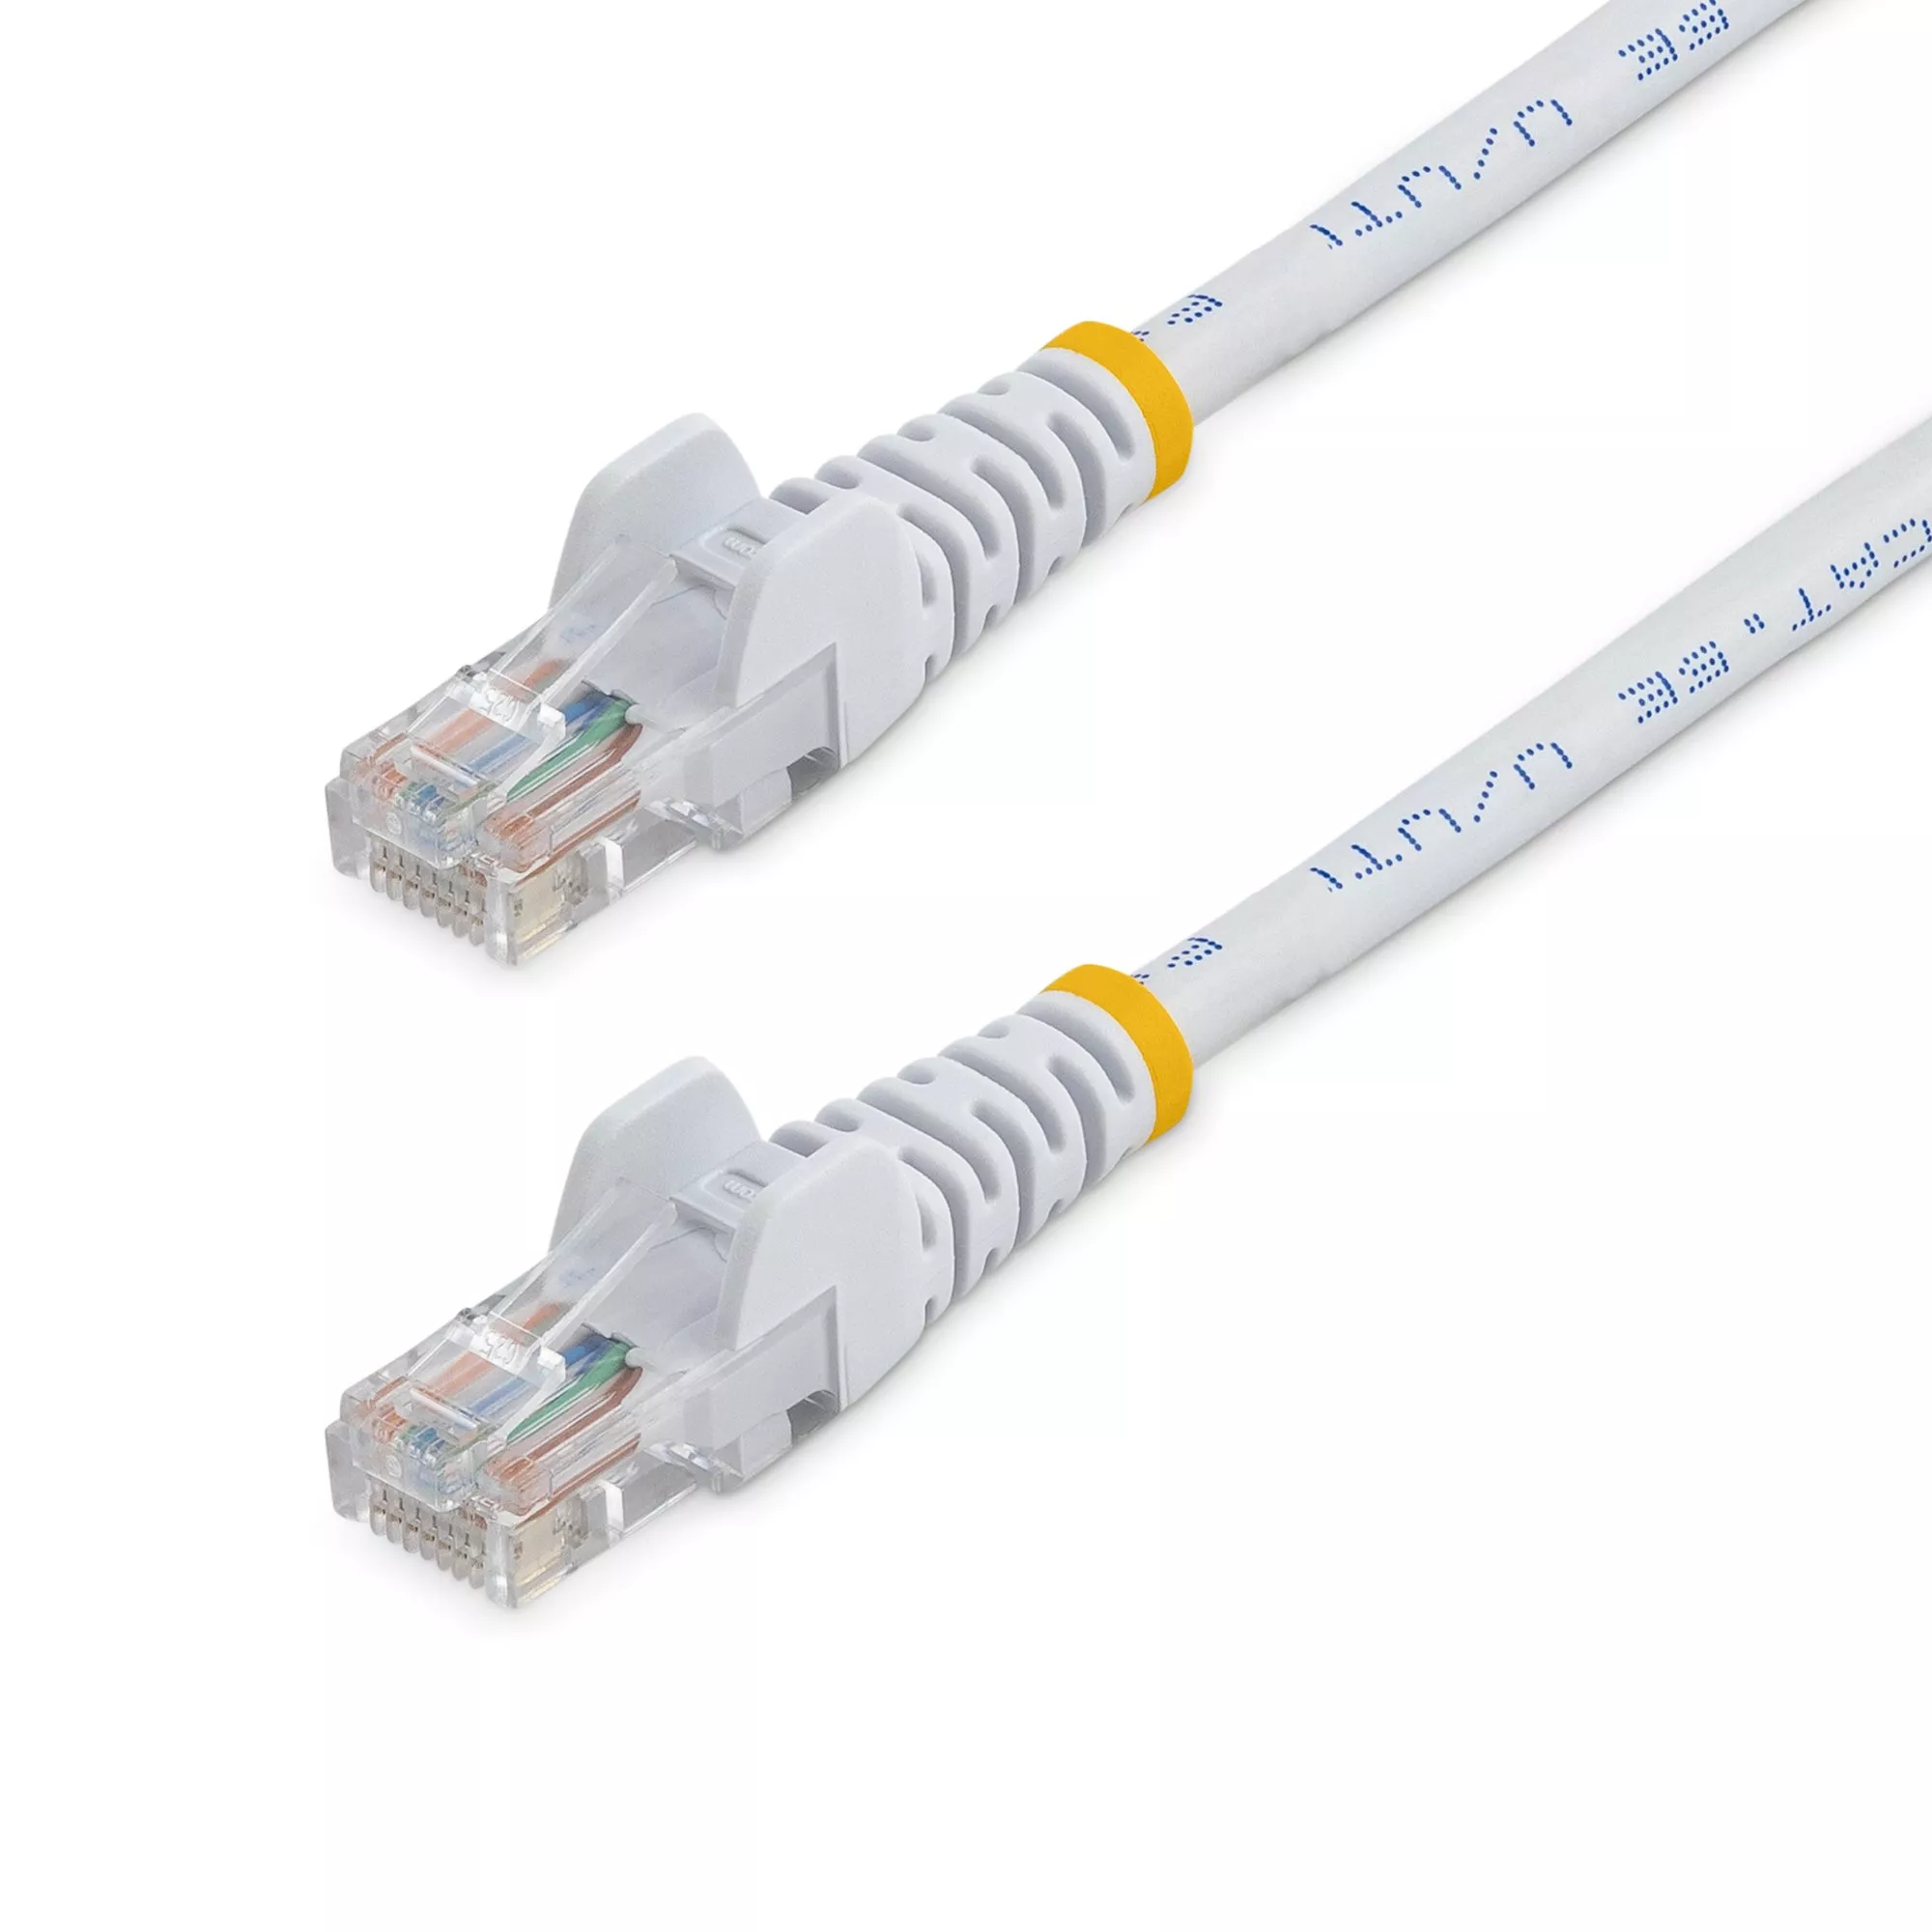 Revendeur officiel StarTech.com Câble réseau Cat5e sans crochet de 10 m